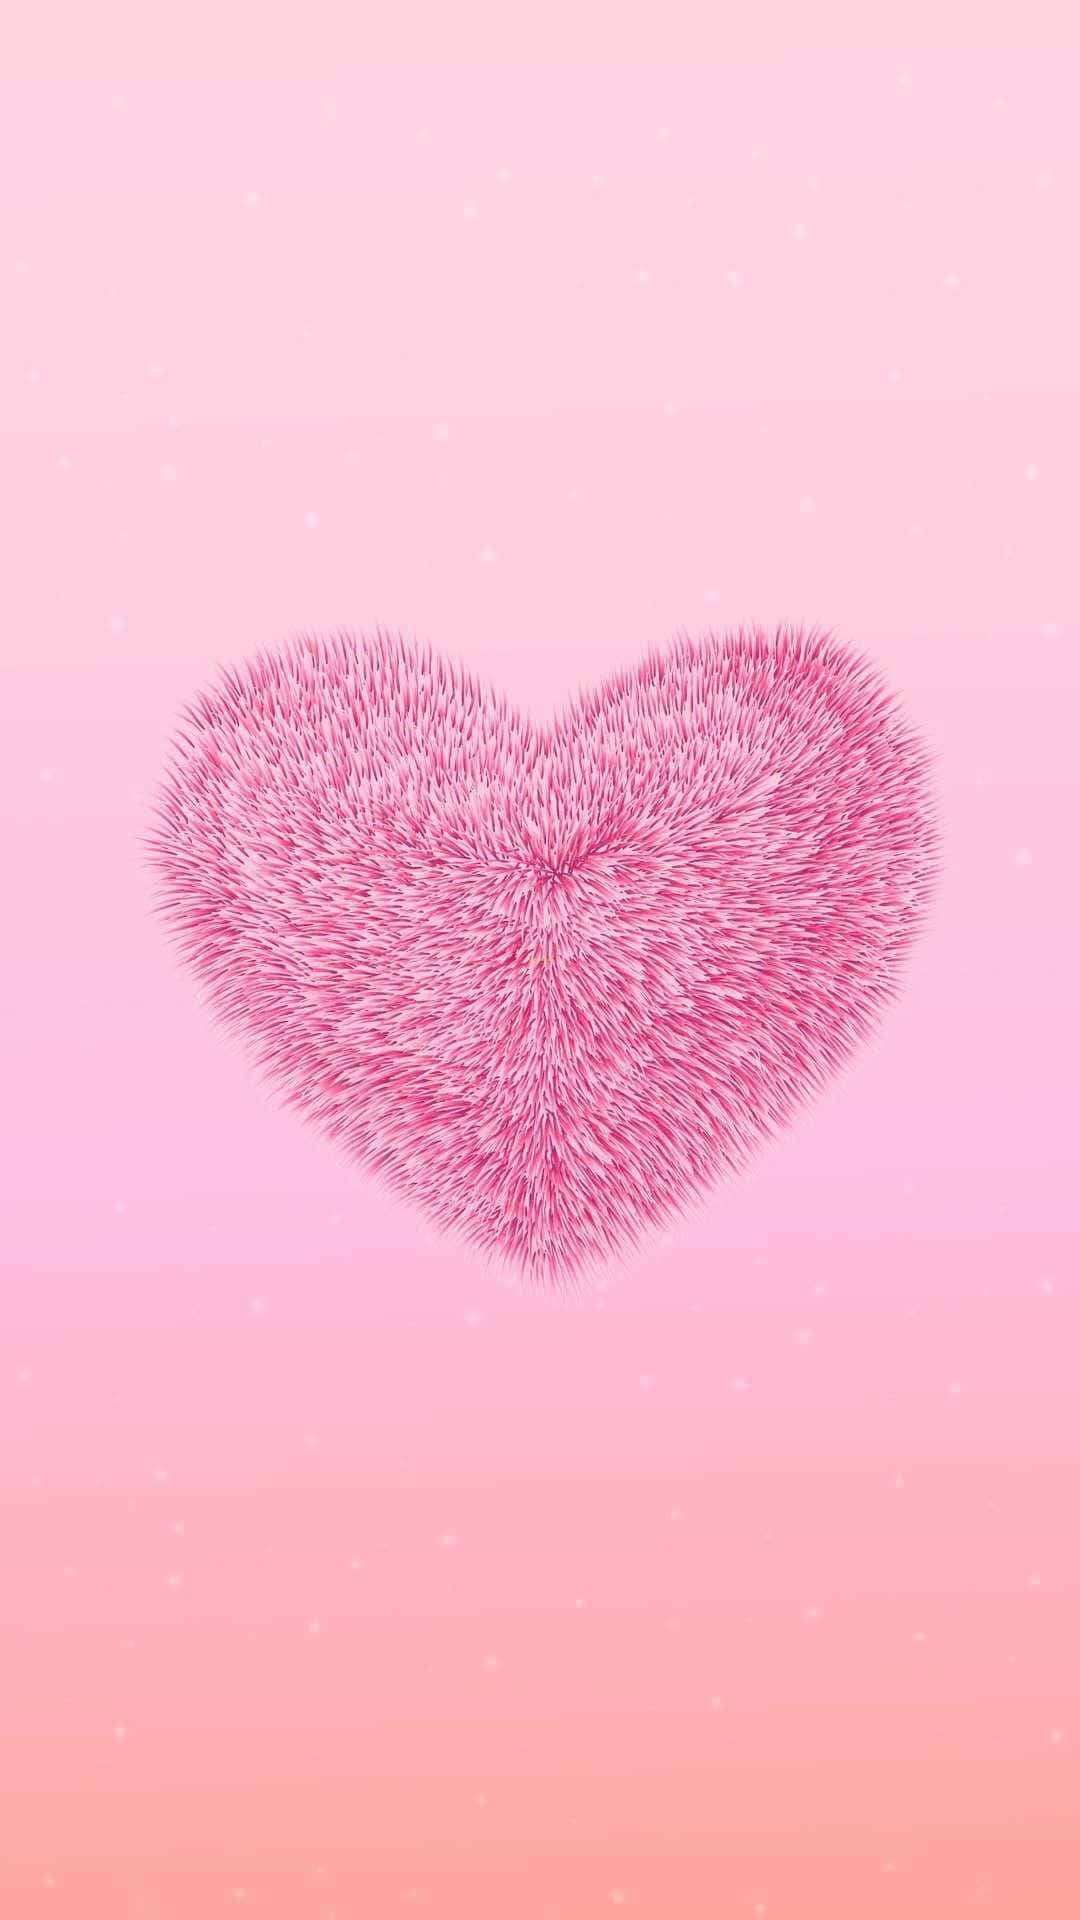 Trái tim hồng tươi sáng đầy tình yêu! Hãy chào đón các moment đáng yêu và ngọt ngào hơn với hình ảnh về trái tim hồng xinh đẹp này.